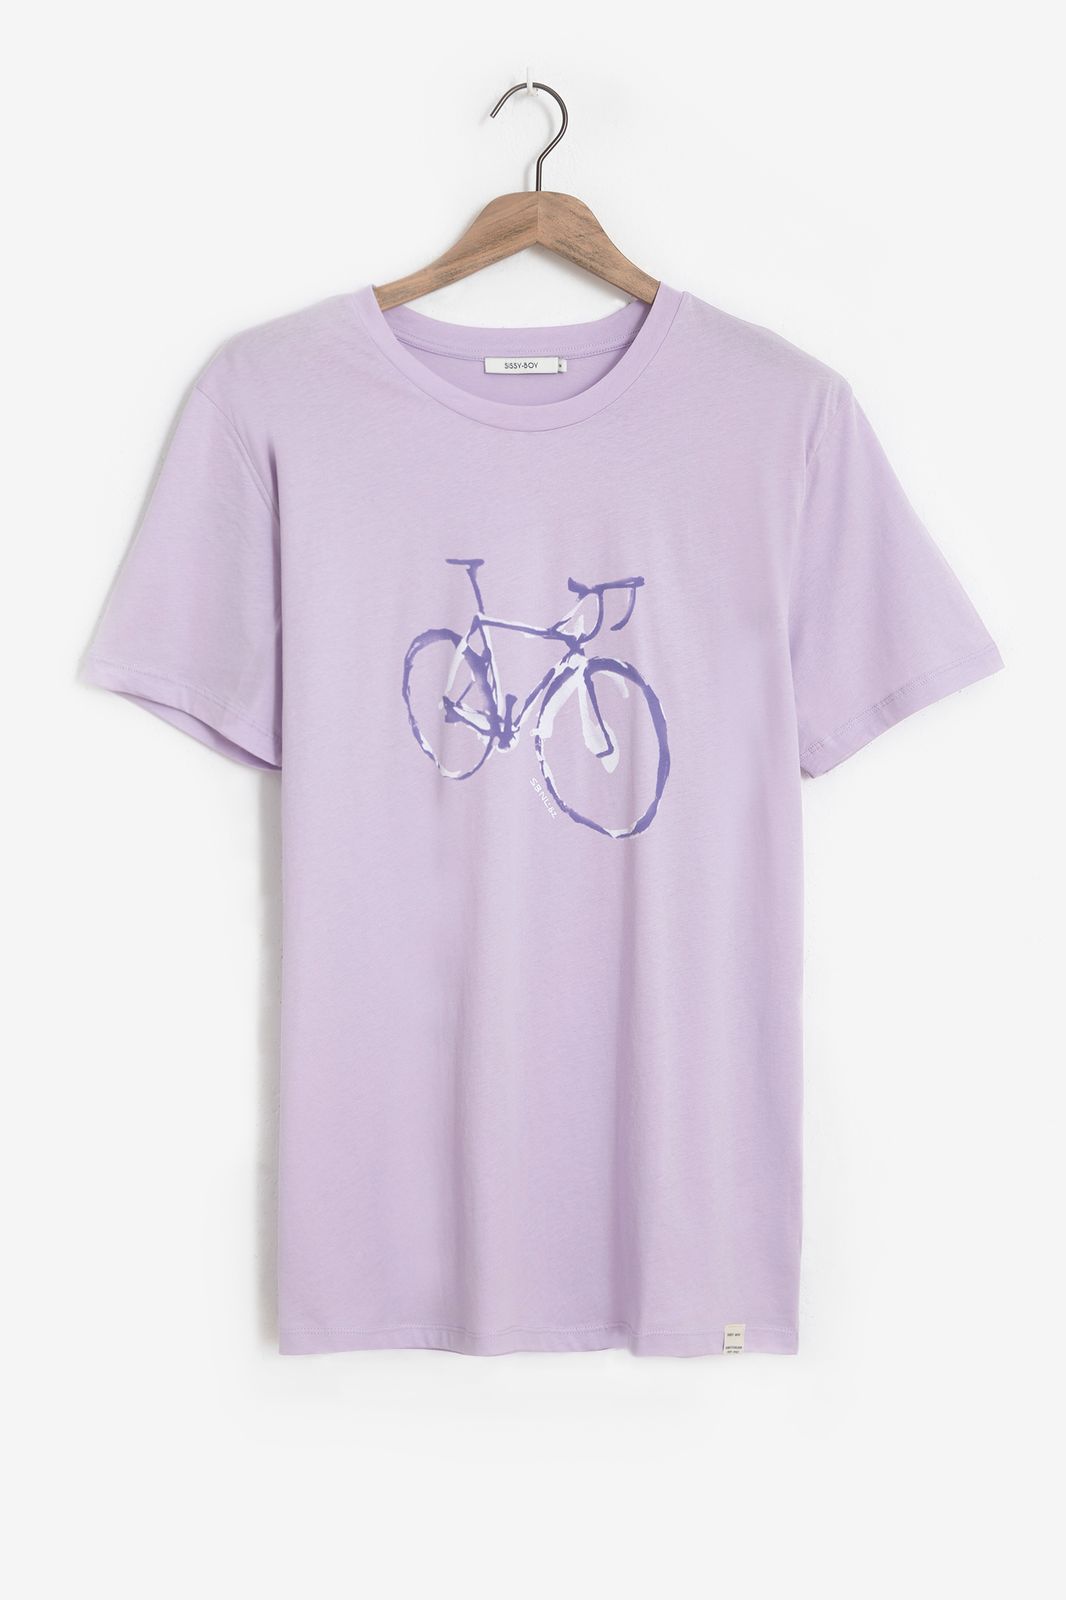 Baumwoll-Shirt mit Fahrrad-Print - flieder